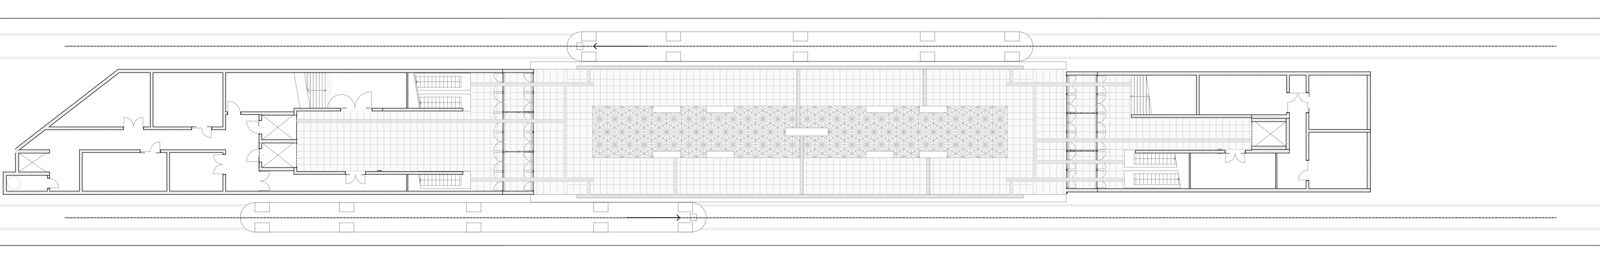 Plantegning av T-bane stasjon. Arkitekt tegning.